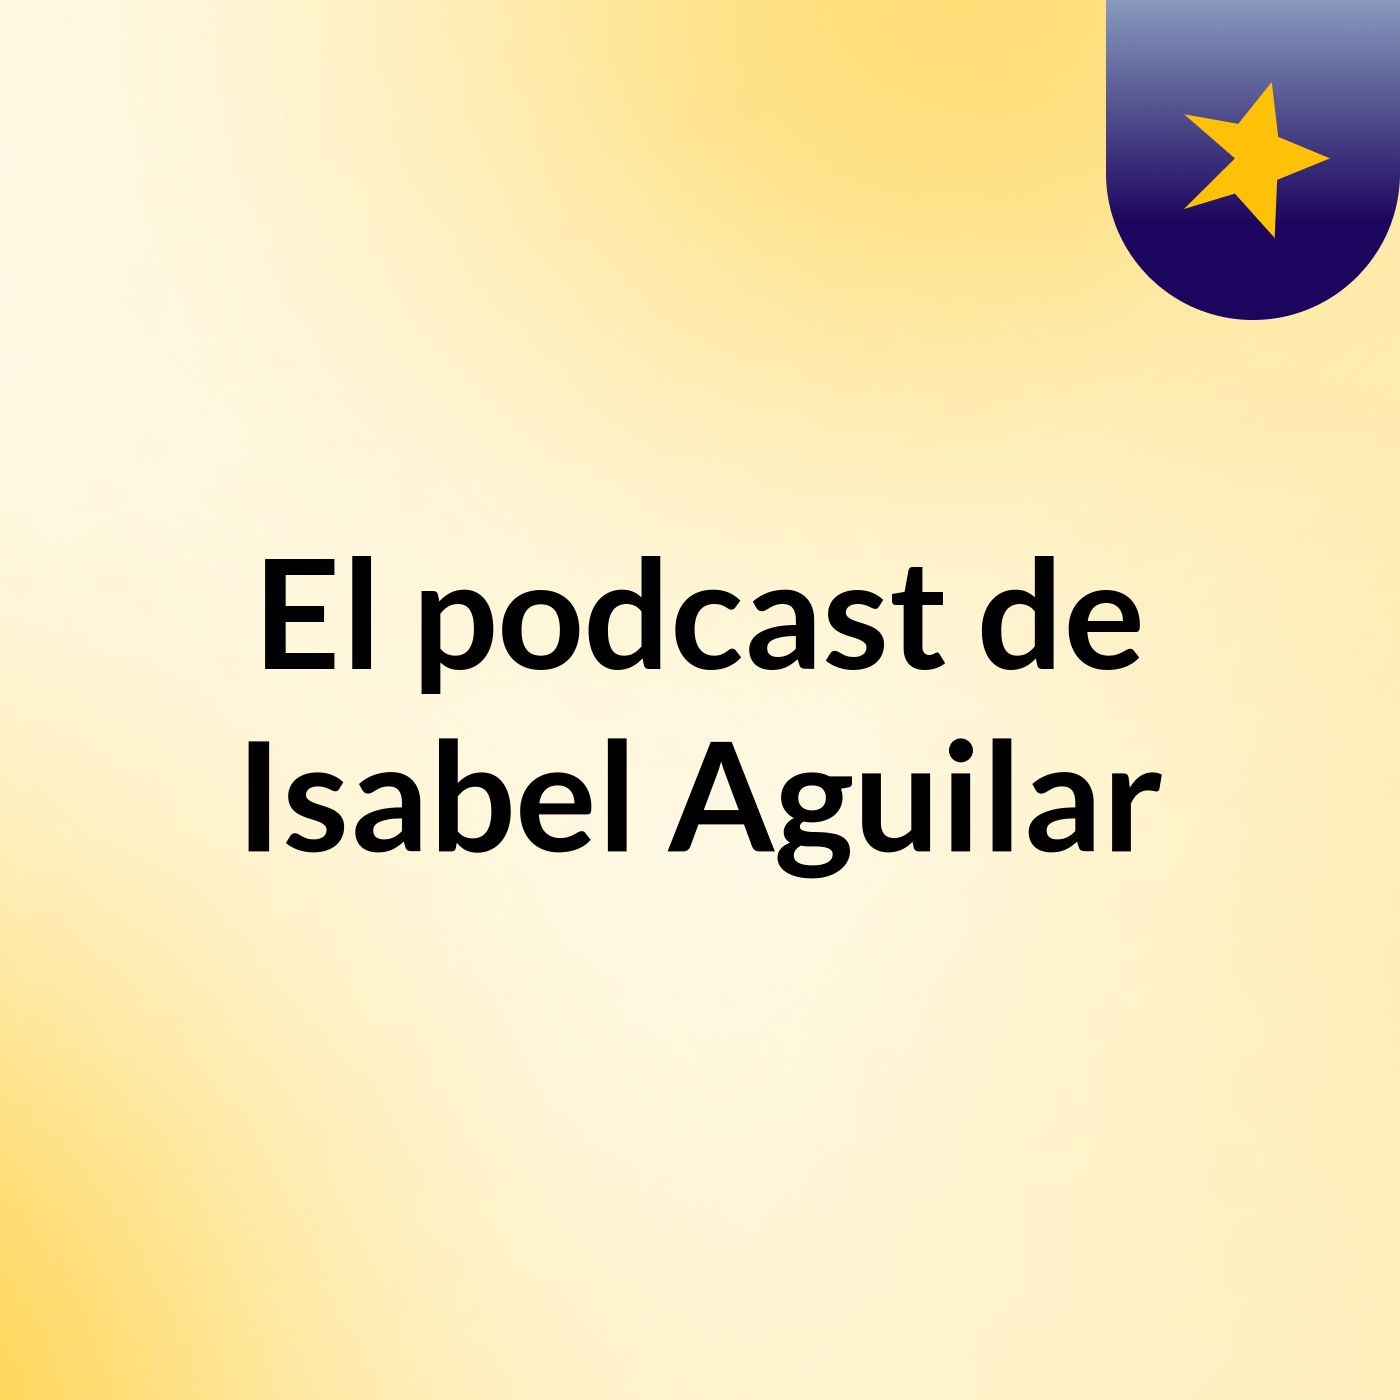 El podcast de Isabel Aguilar